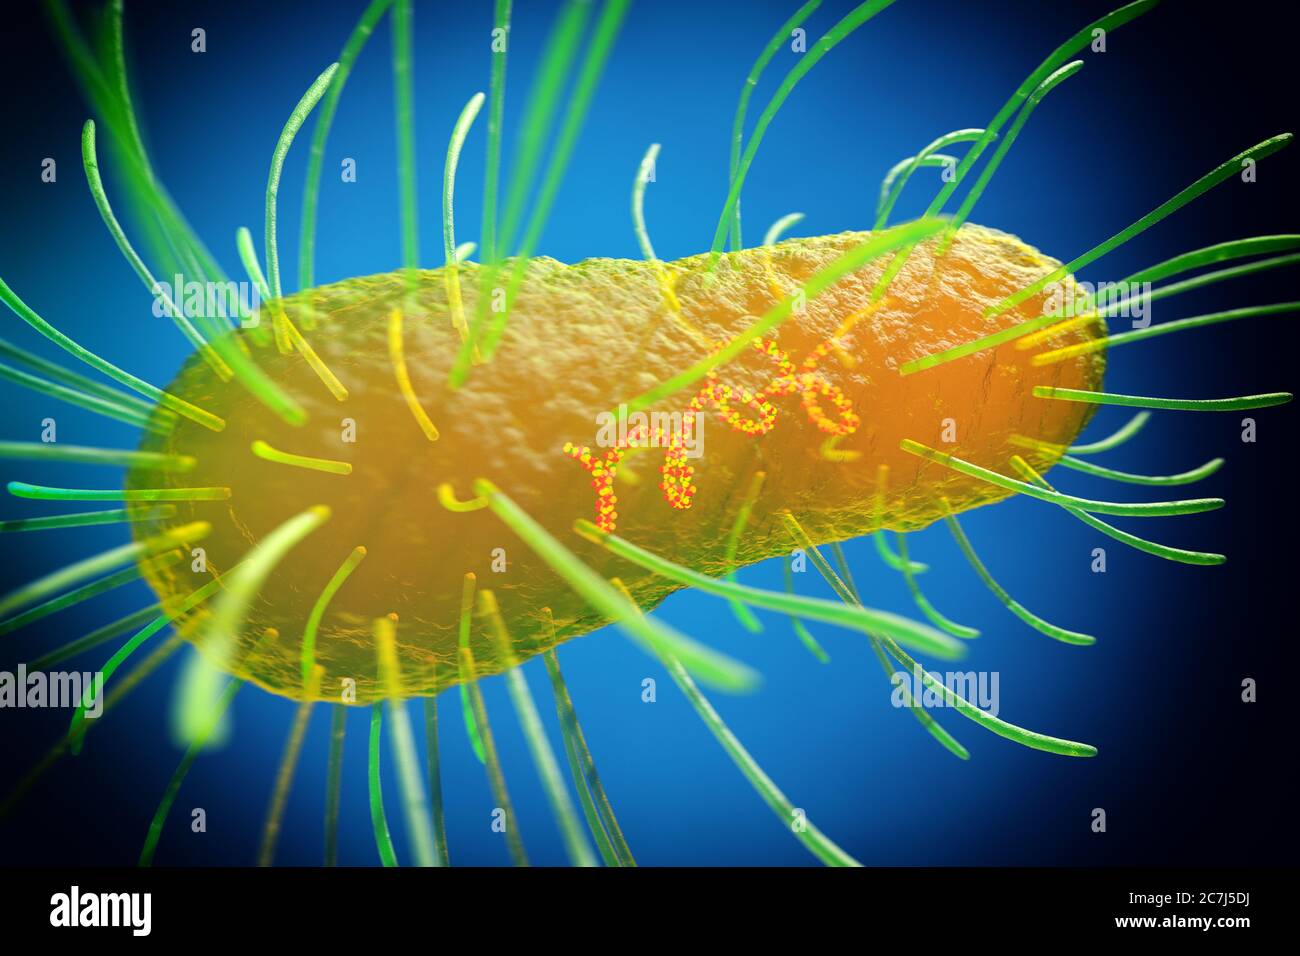 E. coli, illustrazione. Escherichia coli è un batterio a forma di asta (bacillus). La sua membrana cellulare è ricoperta da filamenti fini chiamati pili o fimbriae. Le strutture simili ai capelli, chiamate flagella, sul retro di ogni batterio, forniscono propulsione per farlo muovere. E. coli è un componente normale della flora batterica intestinale, ma in determinate condizioni alcuni ceppi possono causare infezioni gravi come la gastroenterite. Foto Stock